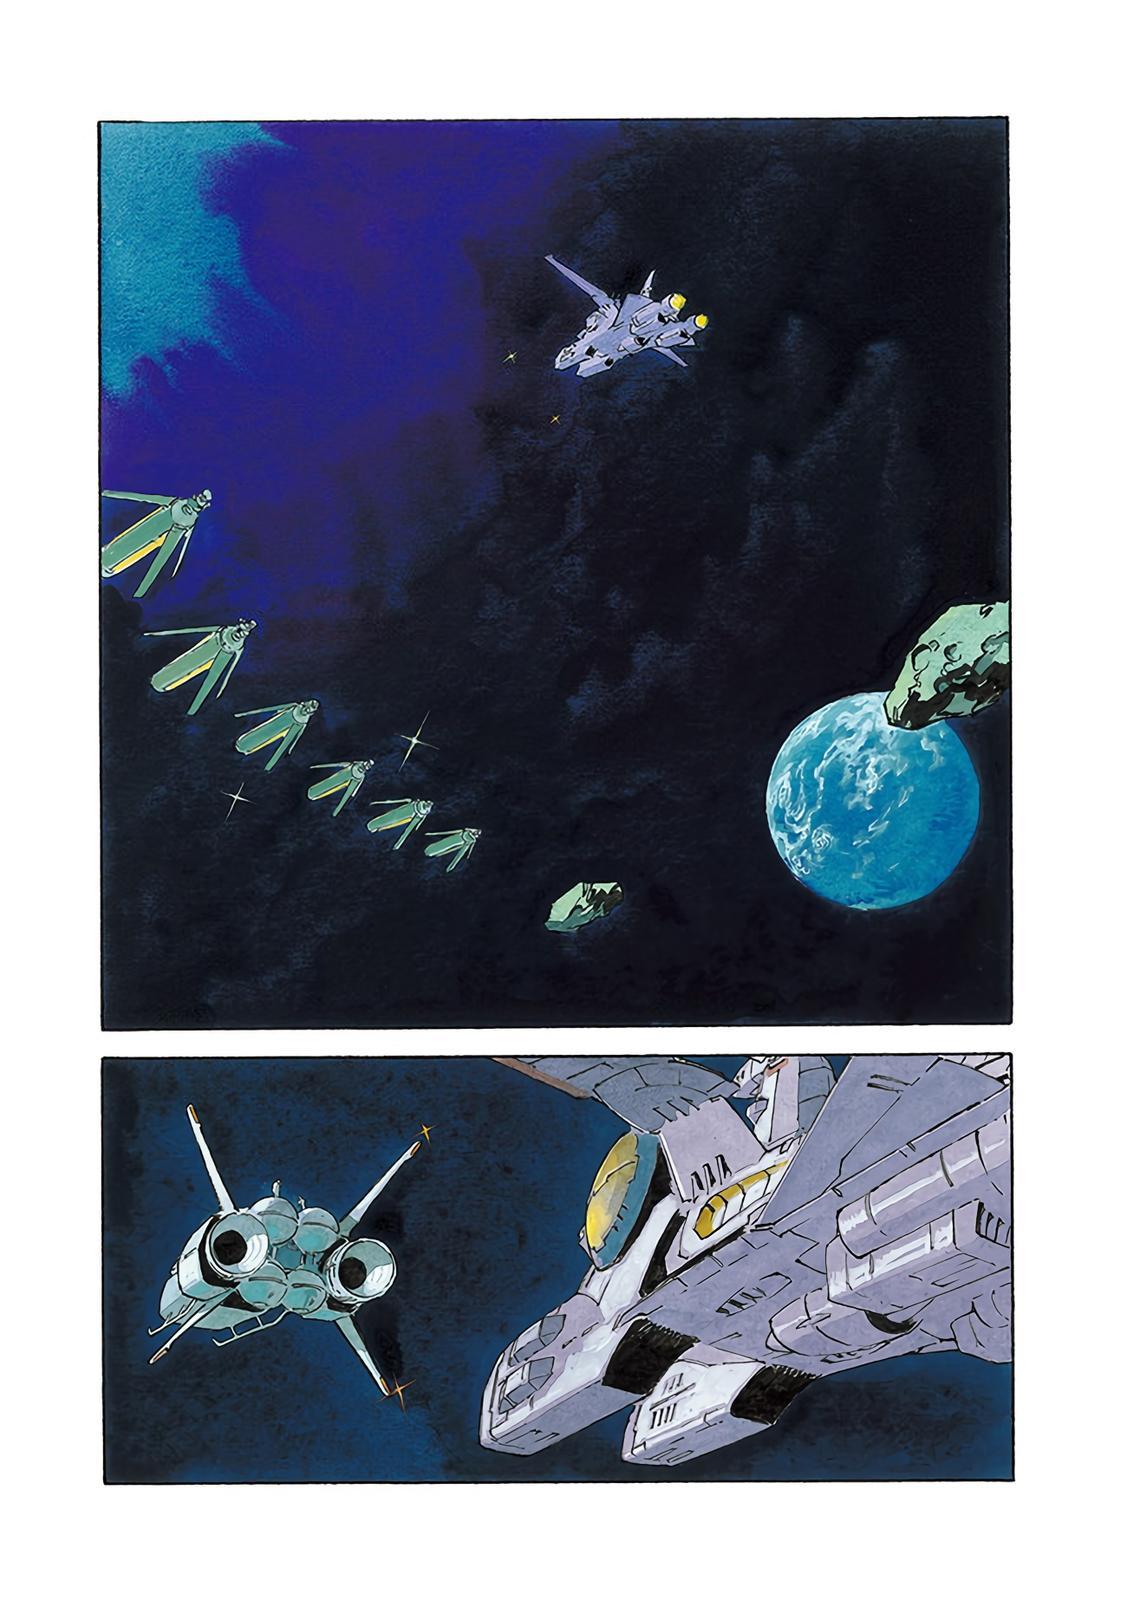 Mobile Suit Gundam: The Origin - episode 73 - 3